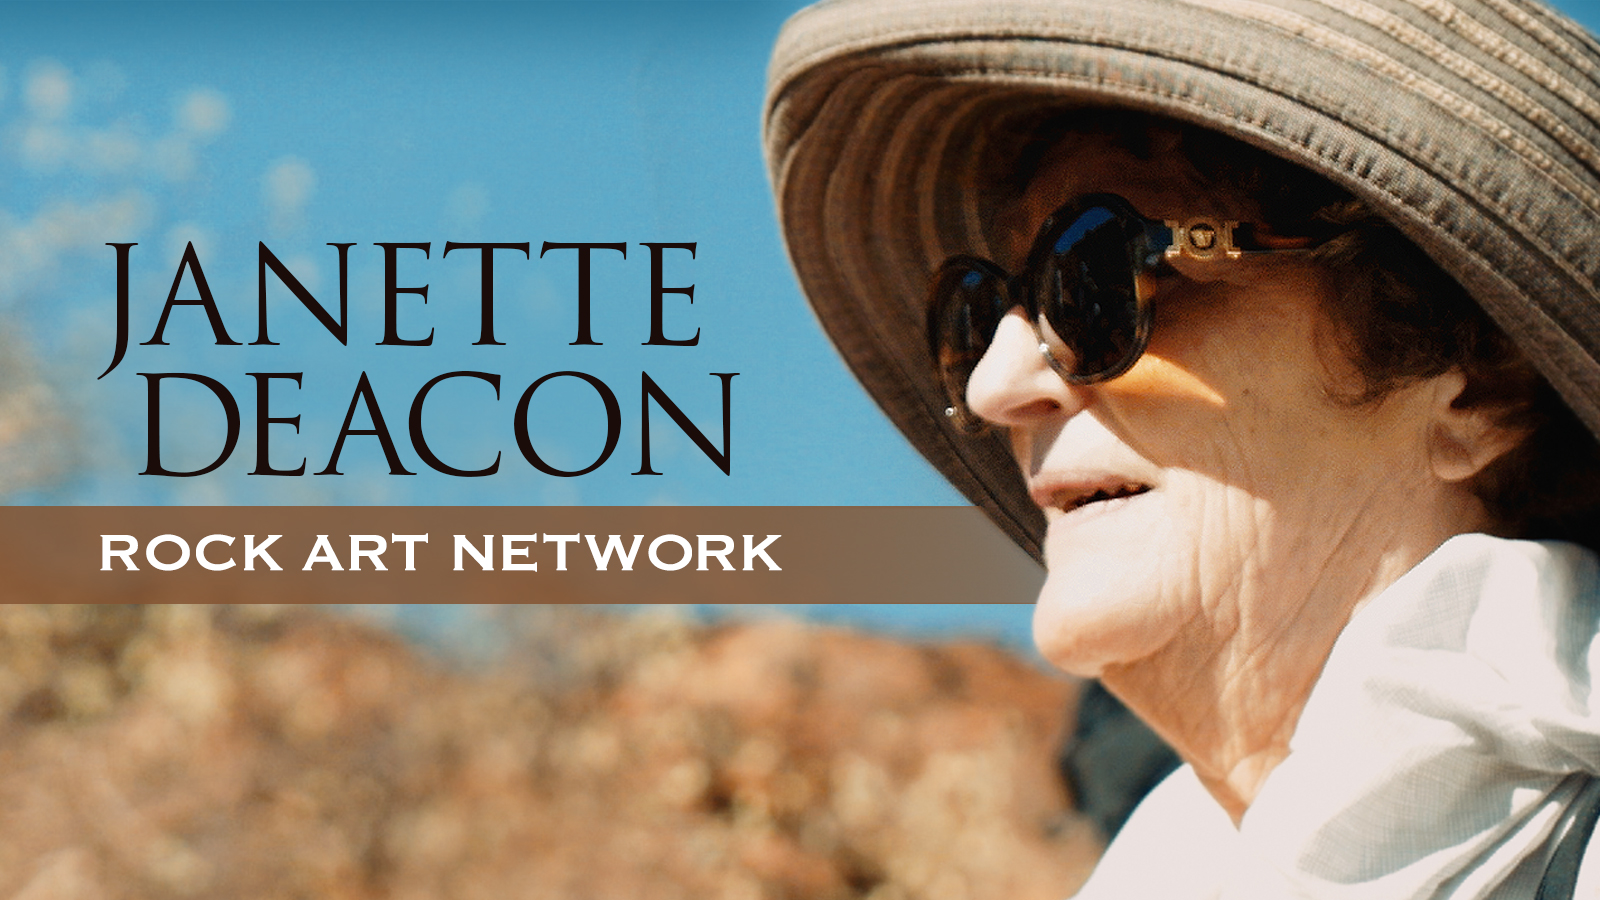 The Rock Art Network Janette Deacon